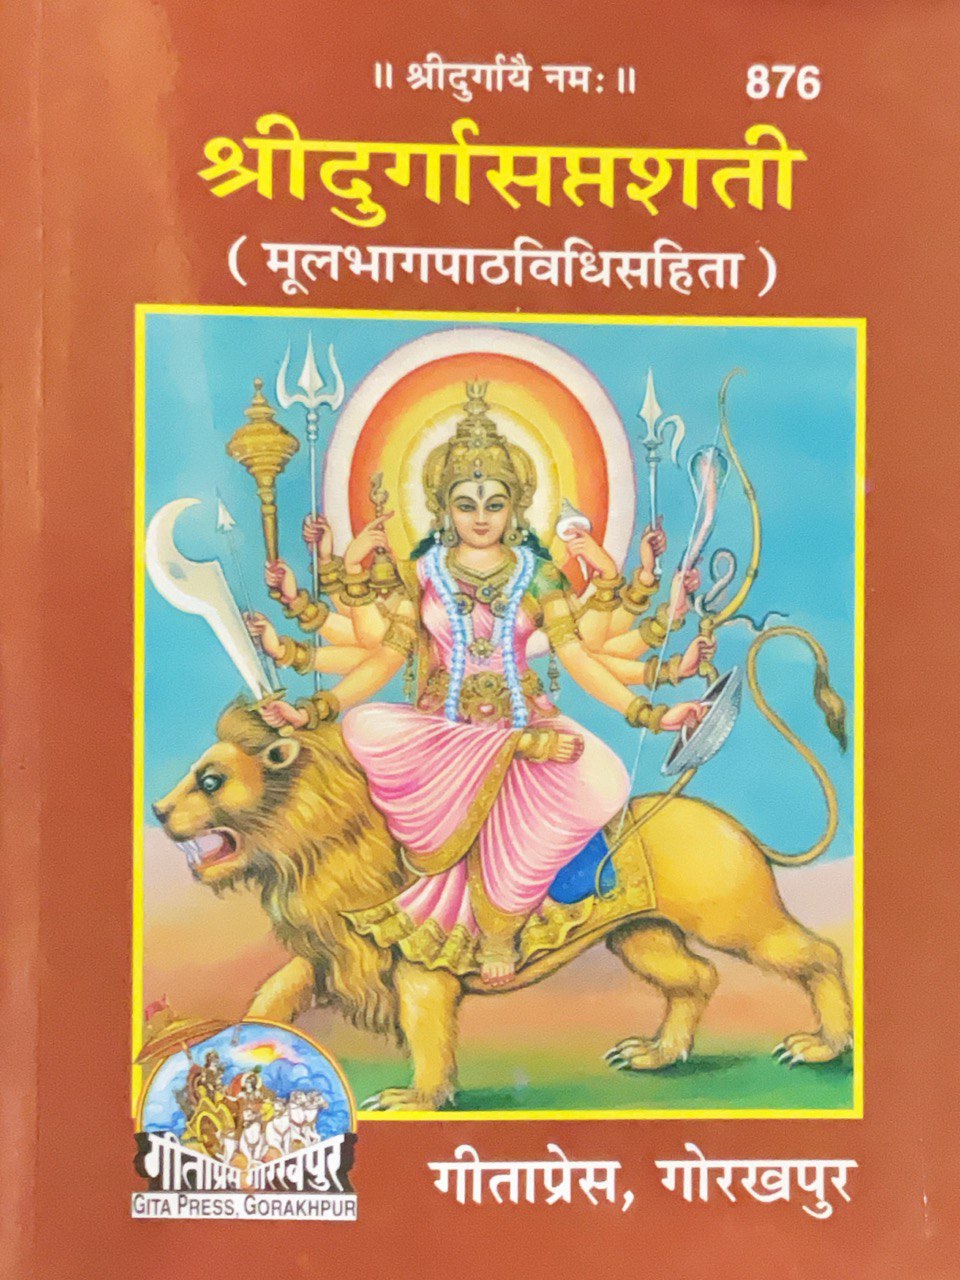 SANATAN   Durga Saptshati (Sanskrit to Hindi) by Gita Press